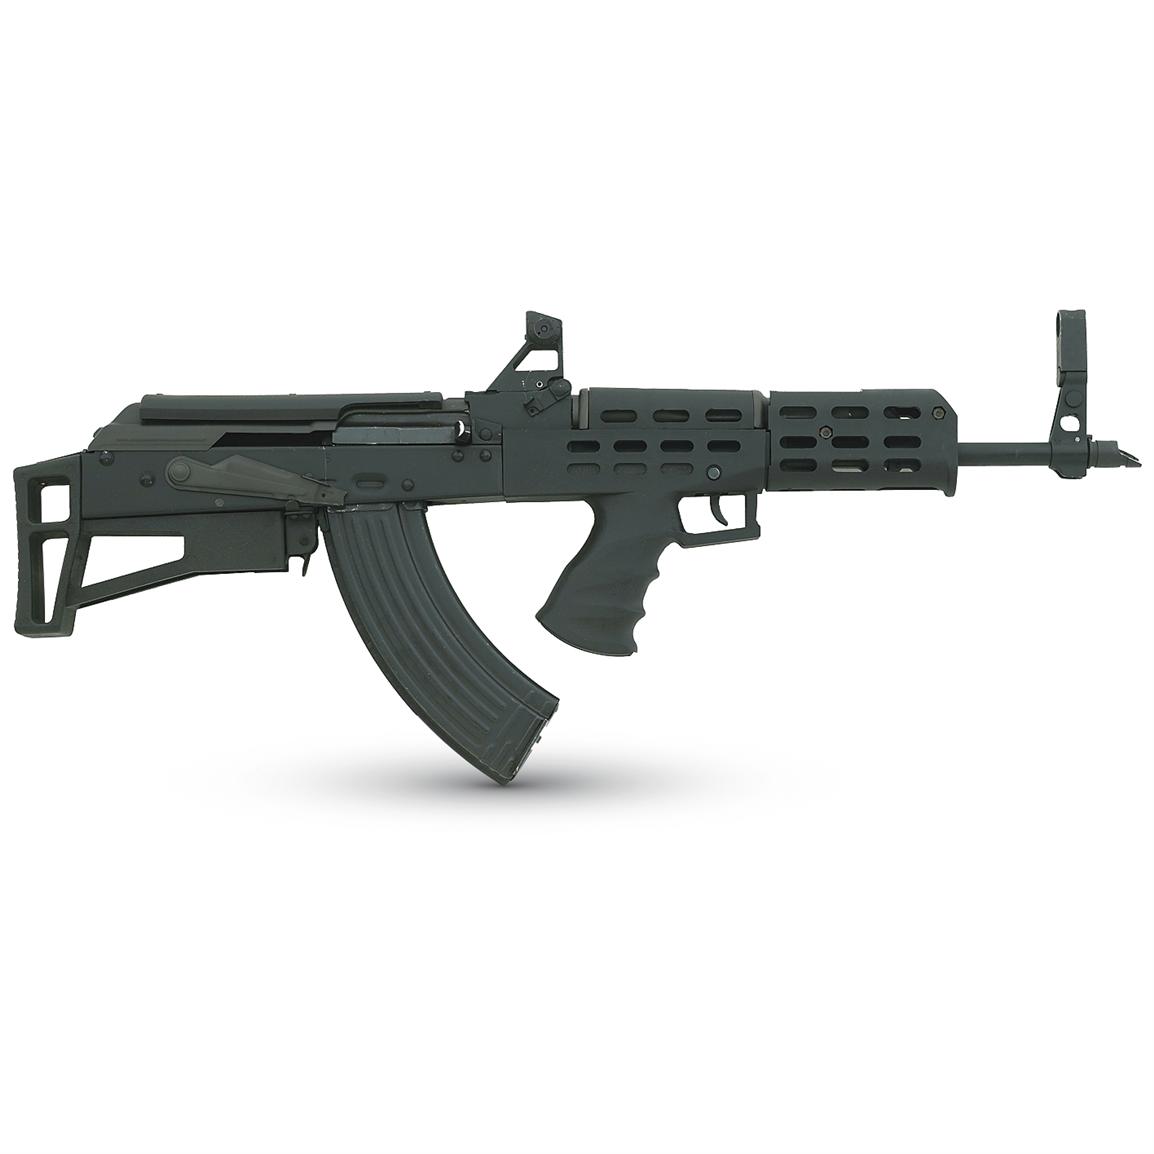 AK - 47 Bullpup Stock